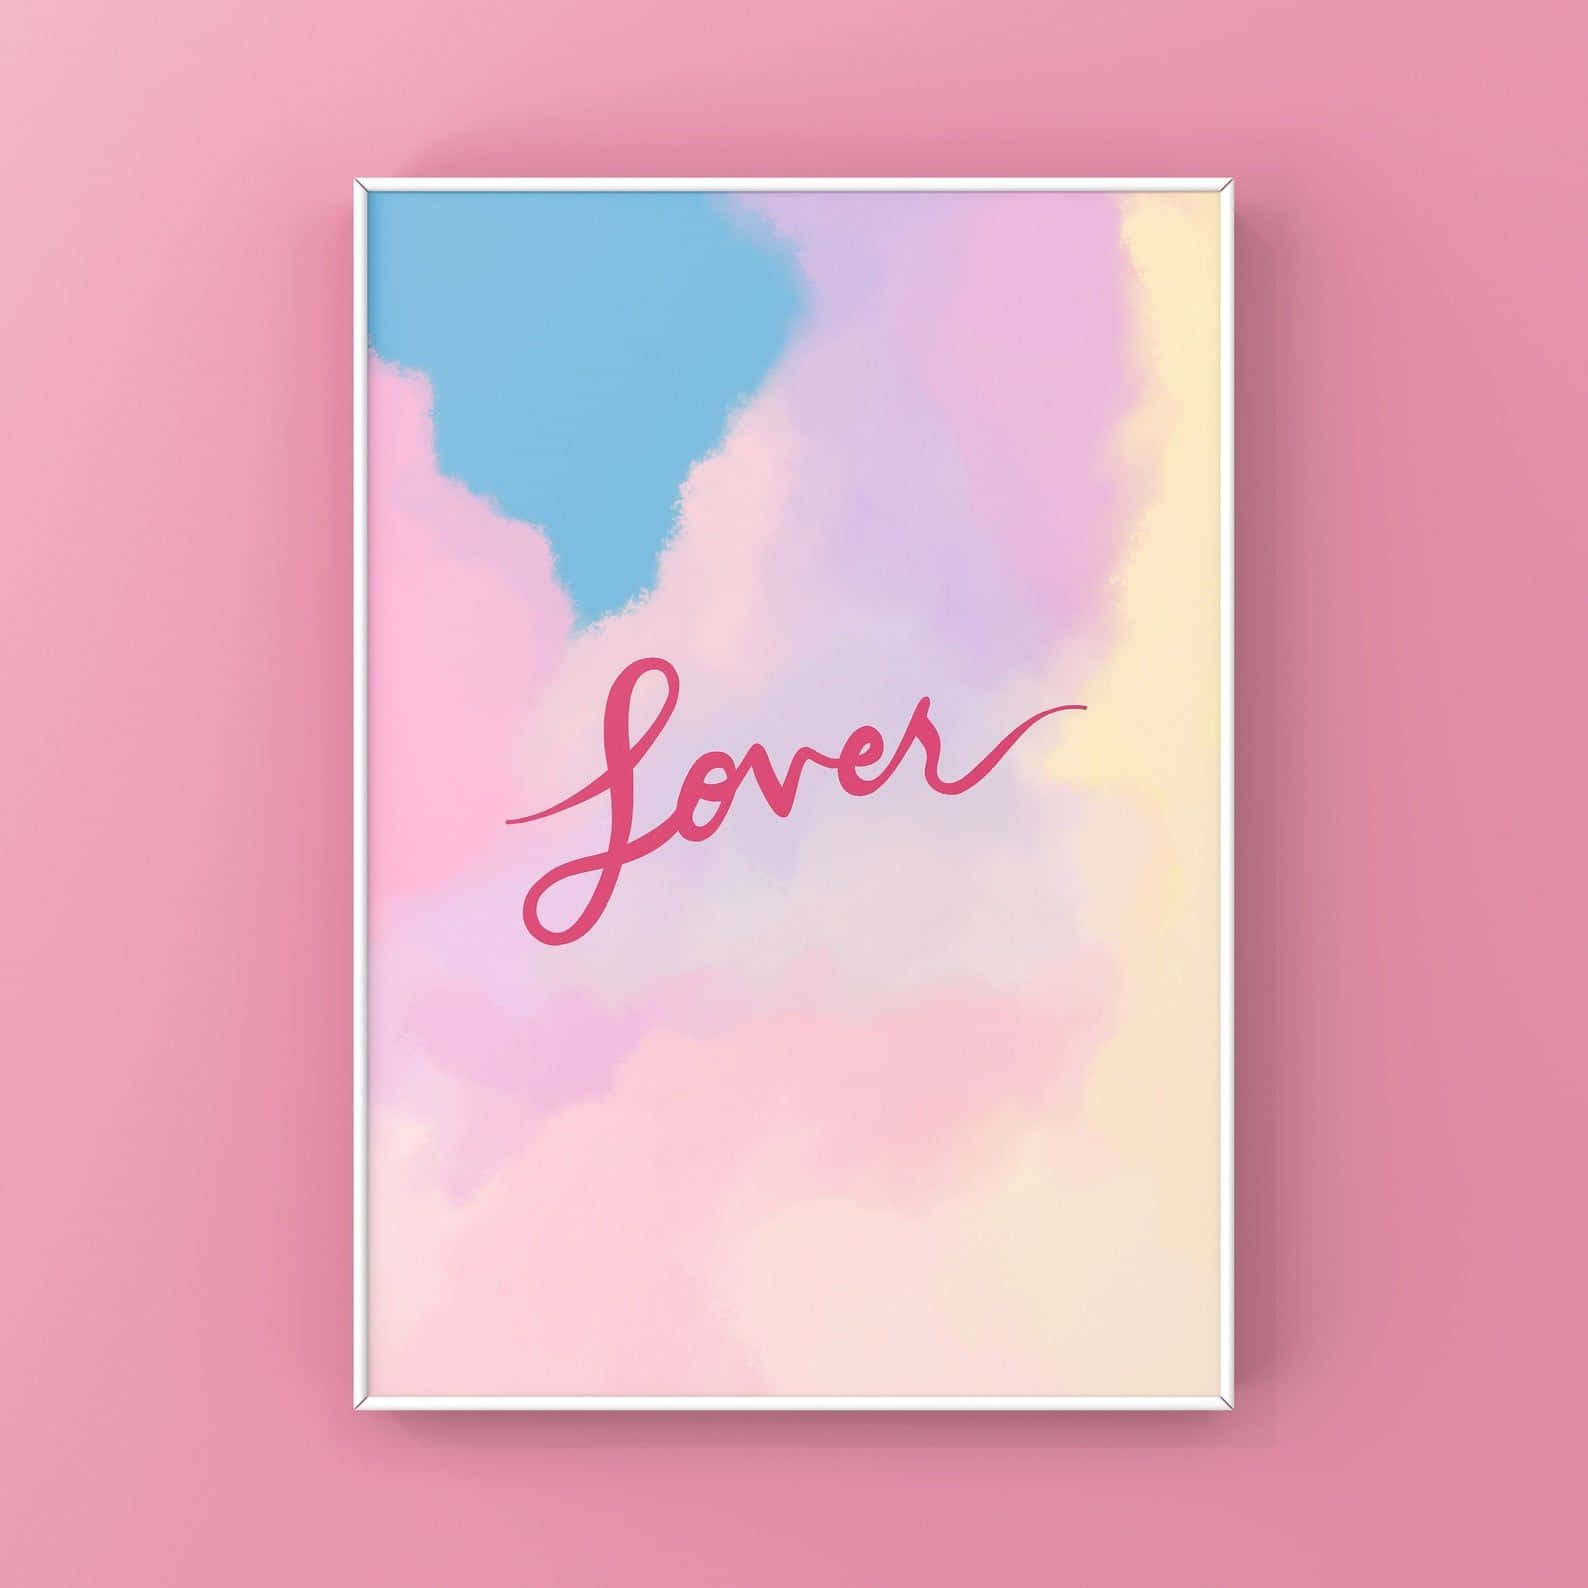 Pastel Lover Album Inspired Artwork Wallpaper